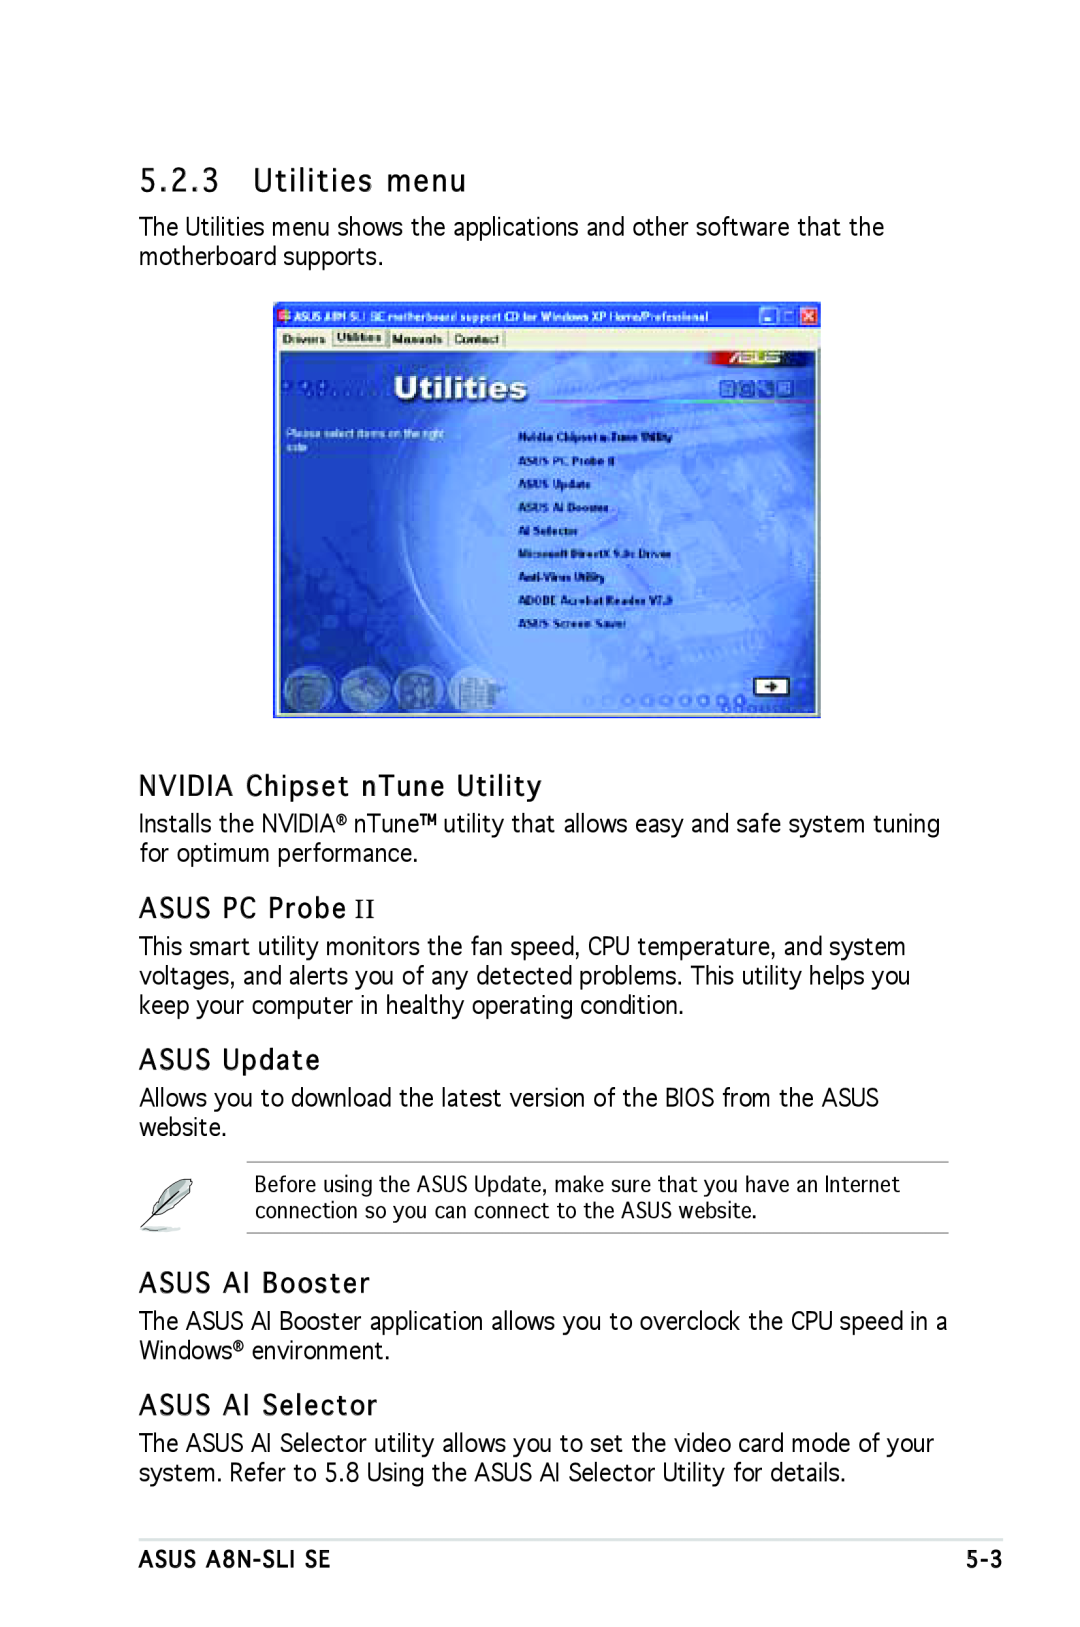 Asus A8N-SLI SE manual Utilities menu, NVIDIA Chipset nTune Utility, ASUS PC Probe I, ASUS Update, ASUS AI Booster 